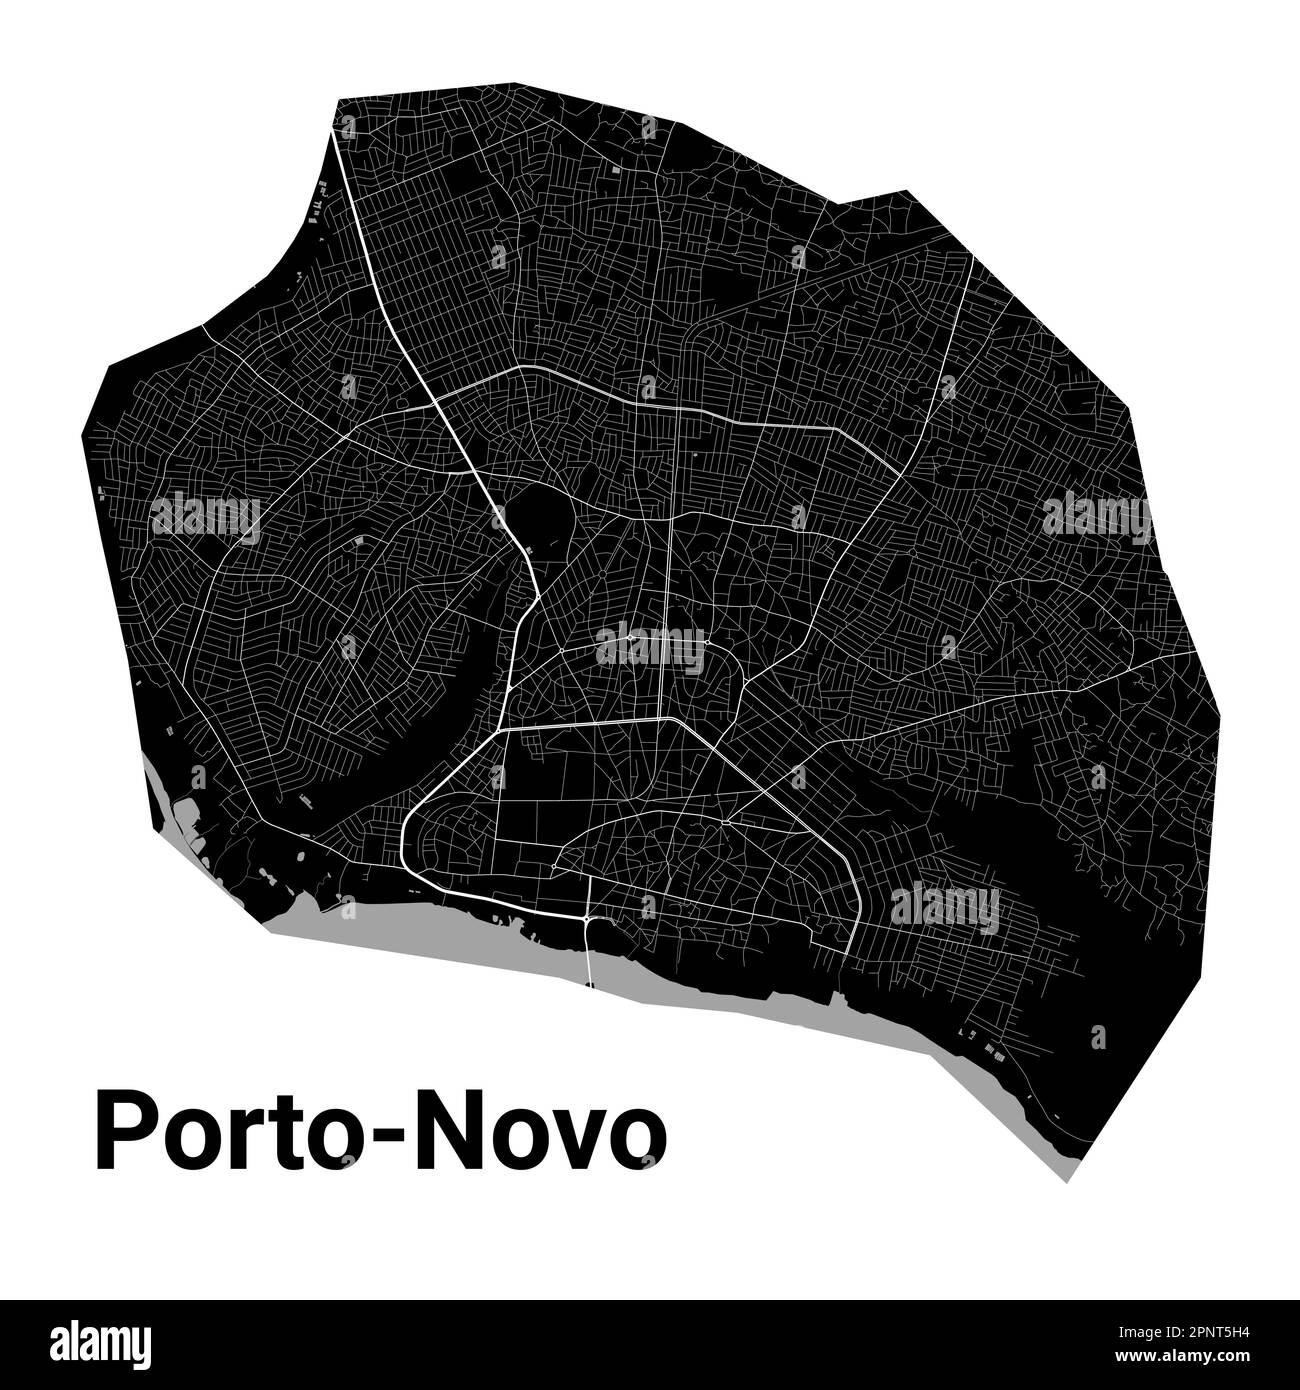 Porto-Novo, Bénin carte. Carte détaillée noire du quartier administratif de Porto-Novo. Vue sur l'aria métropolitain avec affiche CityScape. Terre noire avec routes blanches Illustration de Vecteur